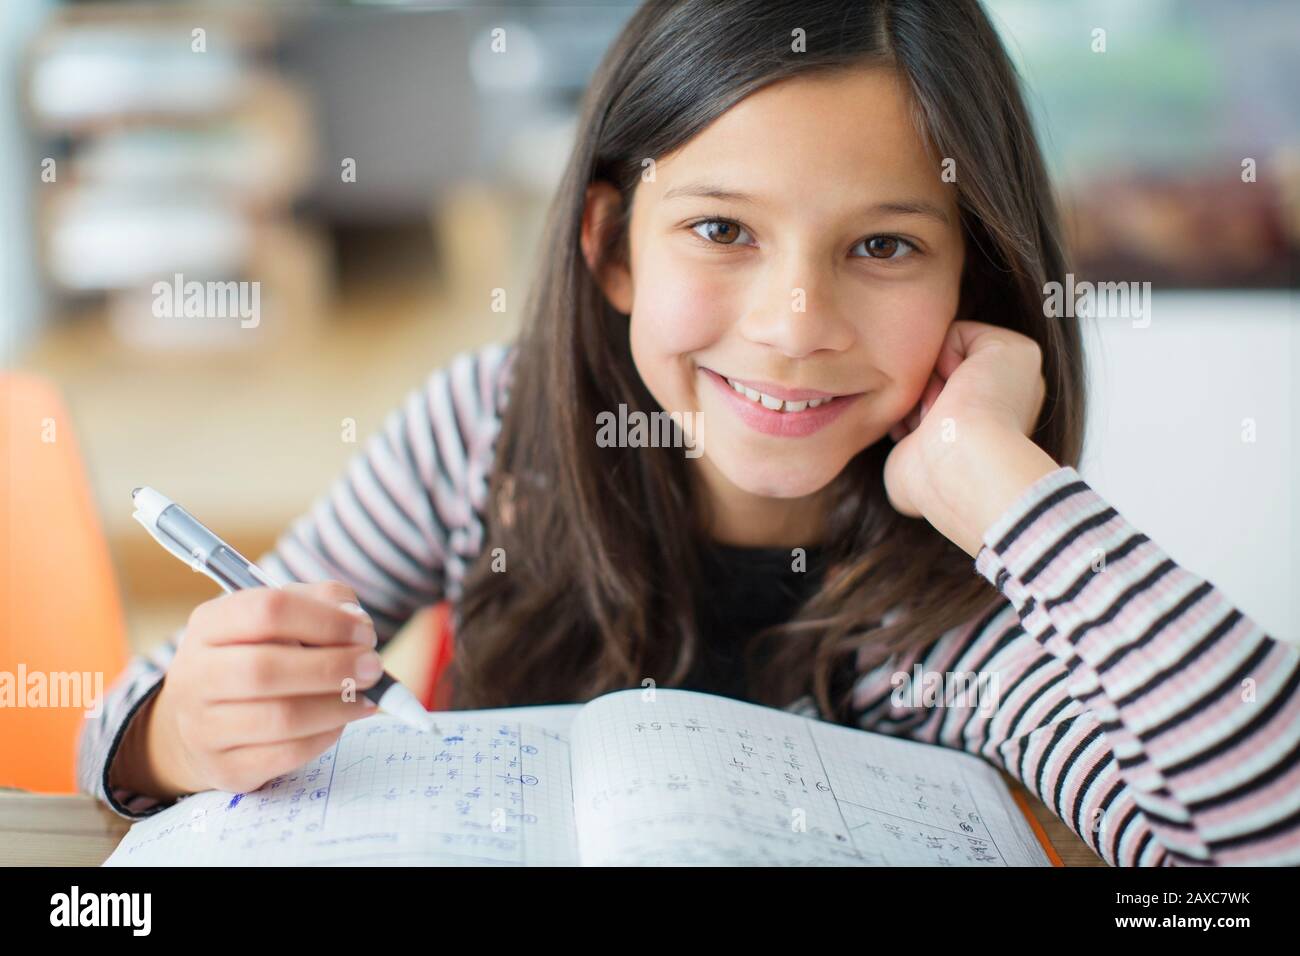 Portrait smiling, confident girl doing homework Stock Photo